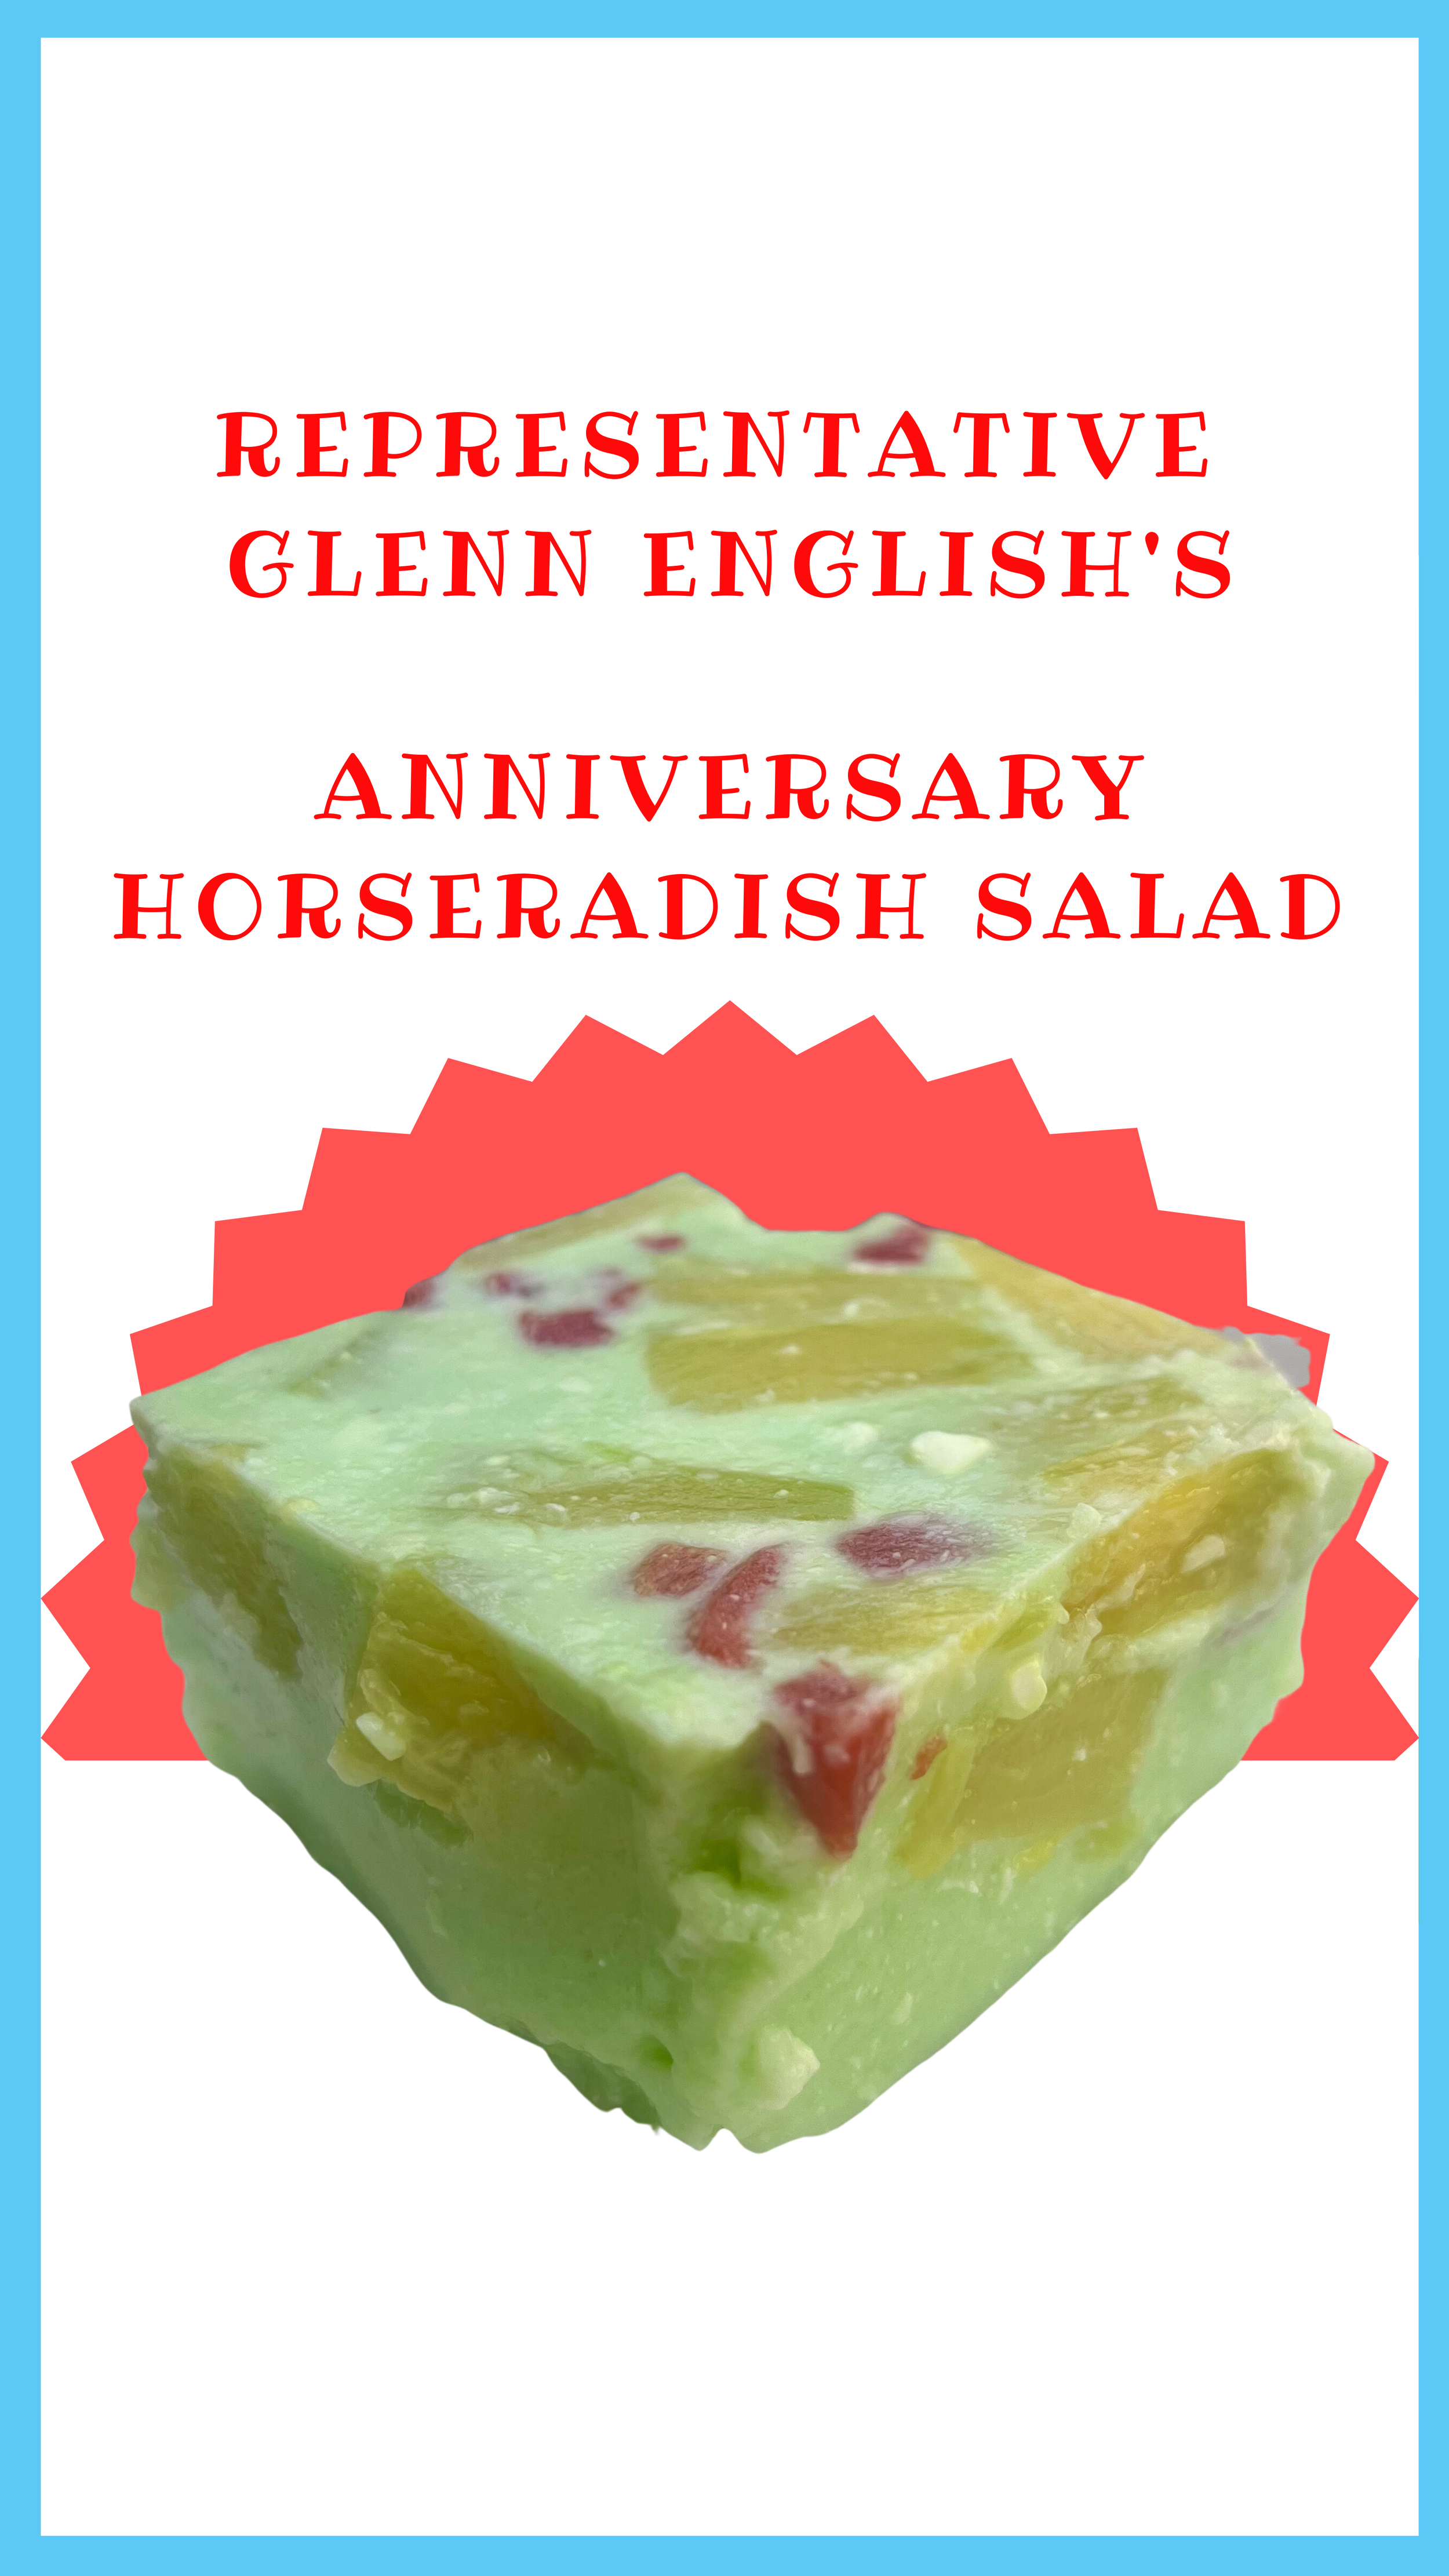 Glenn English's Horseradish Salad